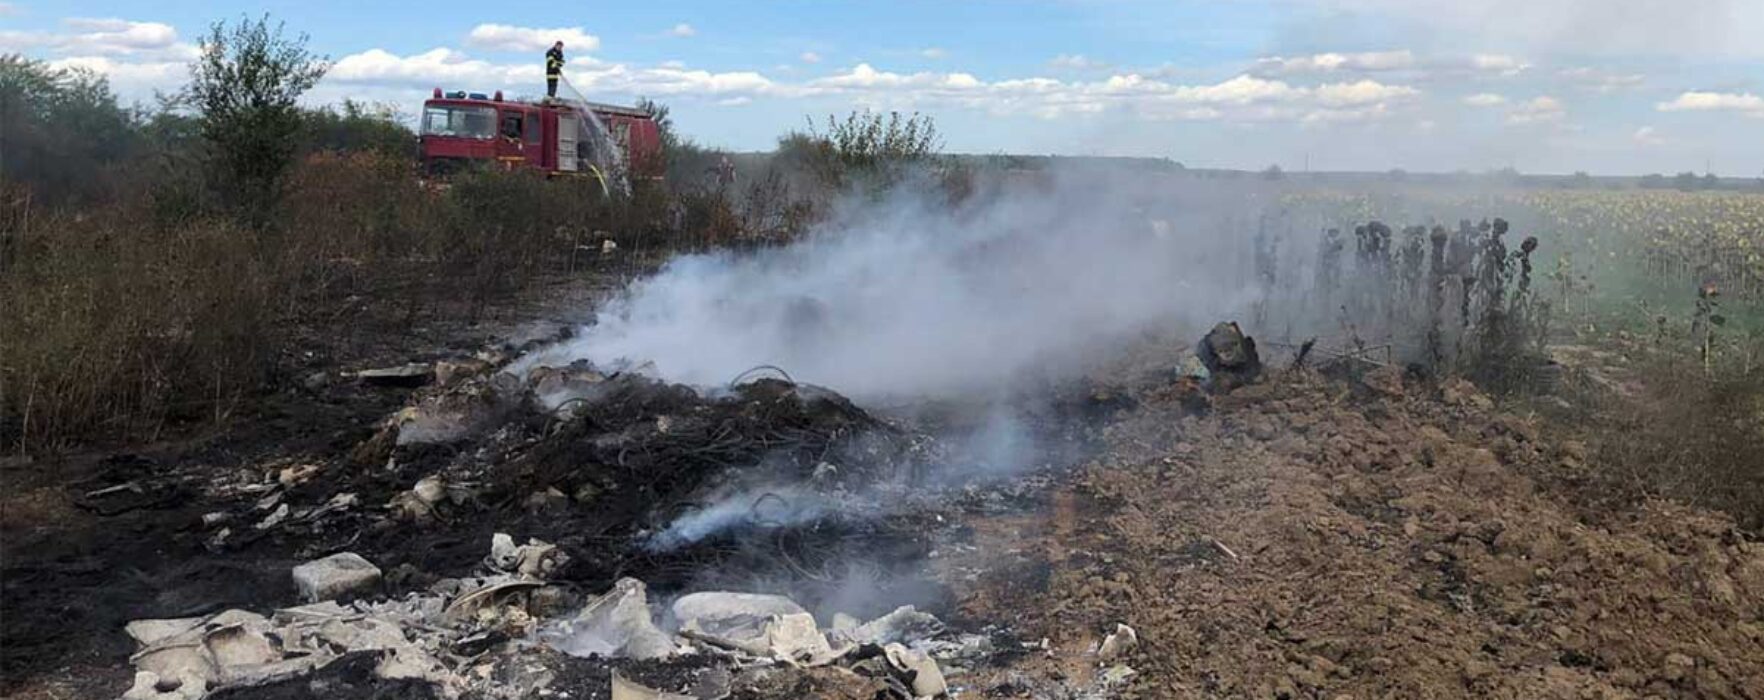 Dâmboviţa: Incendiu la Bălteni, ard 10 tone de cauciucuri şi mase plastice